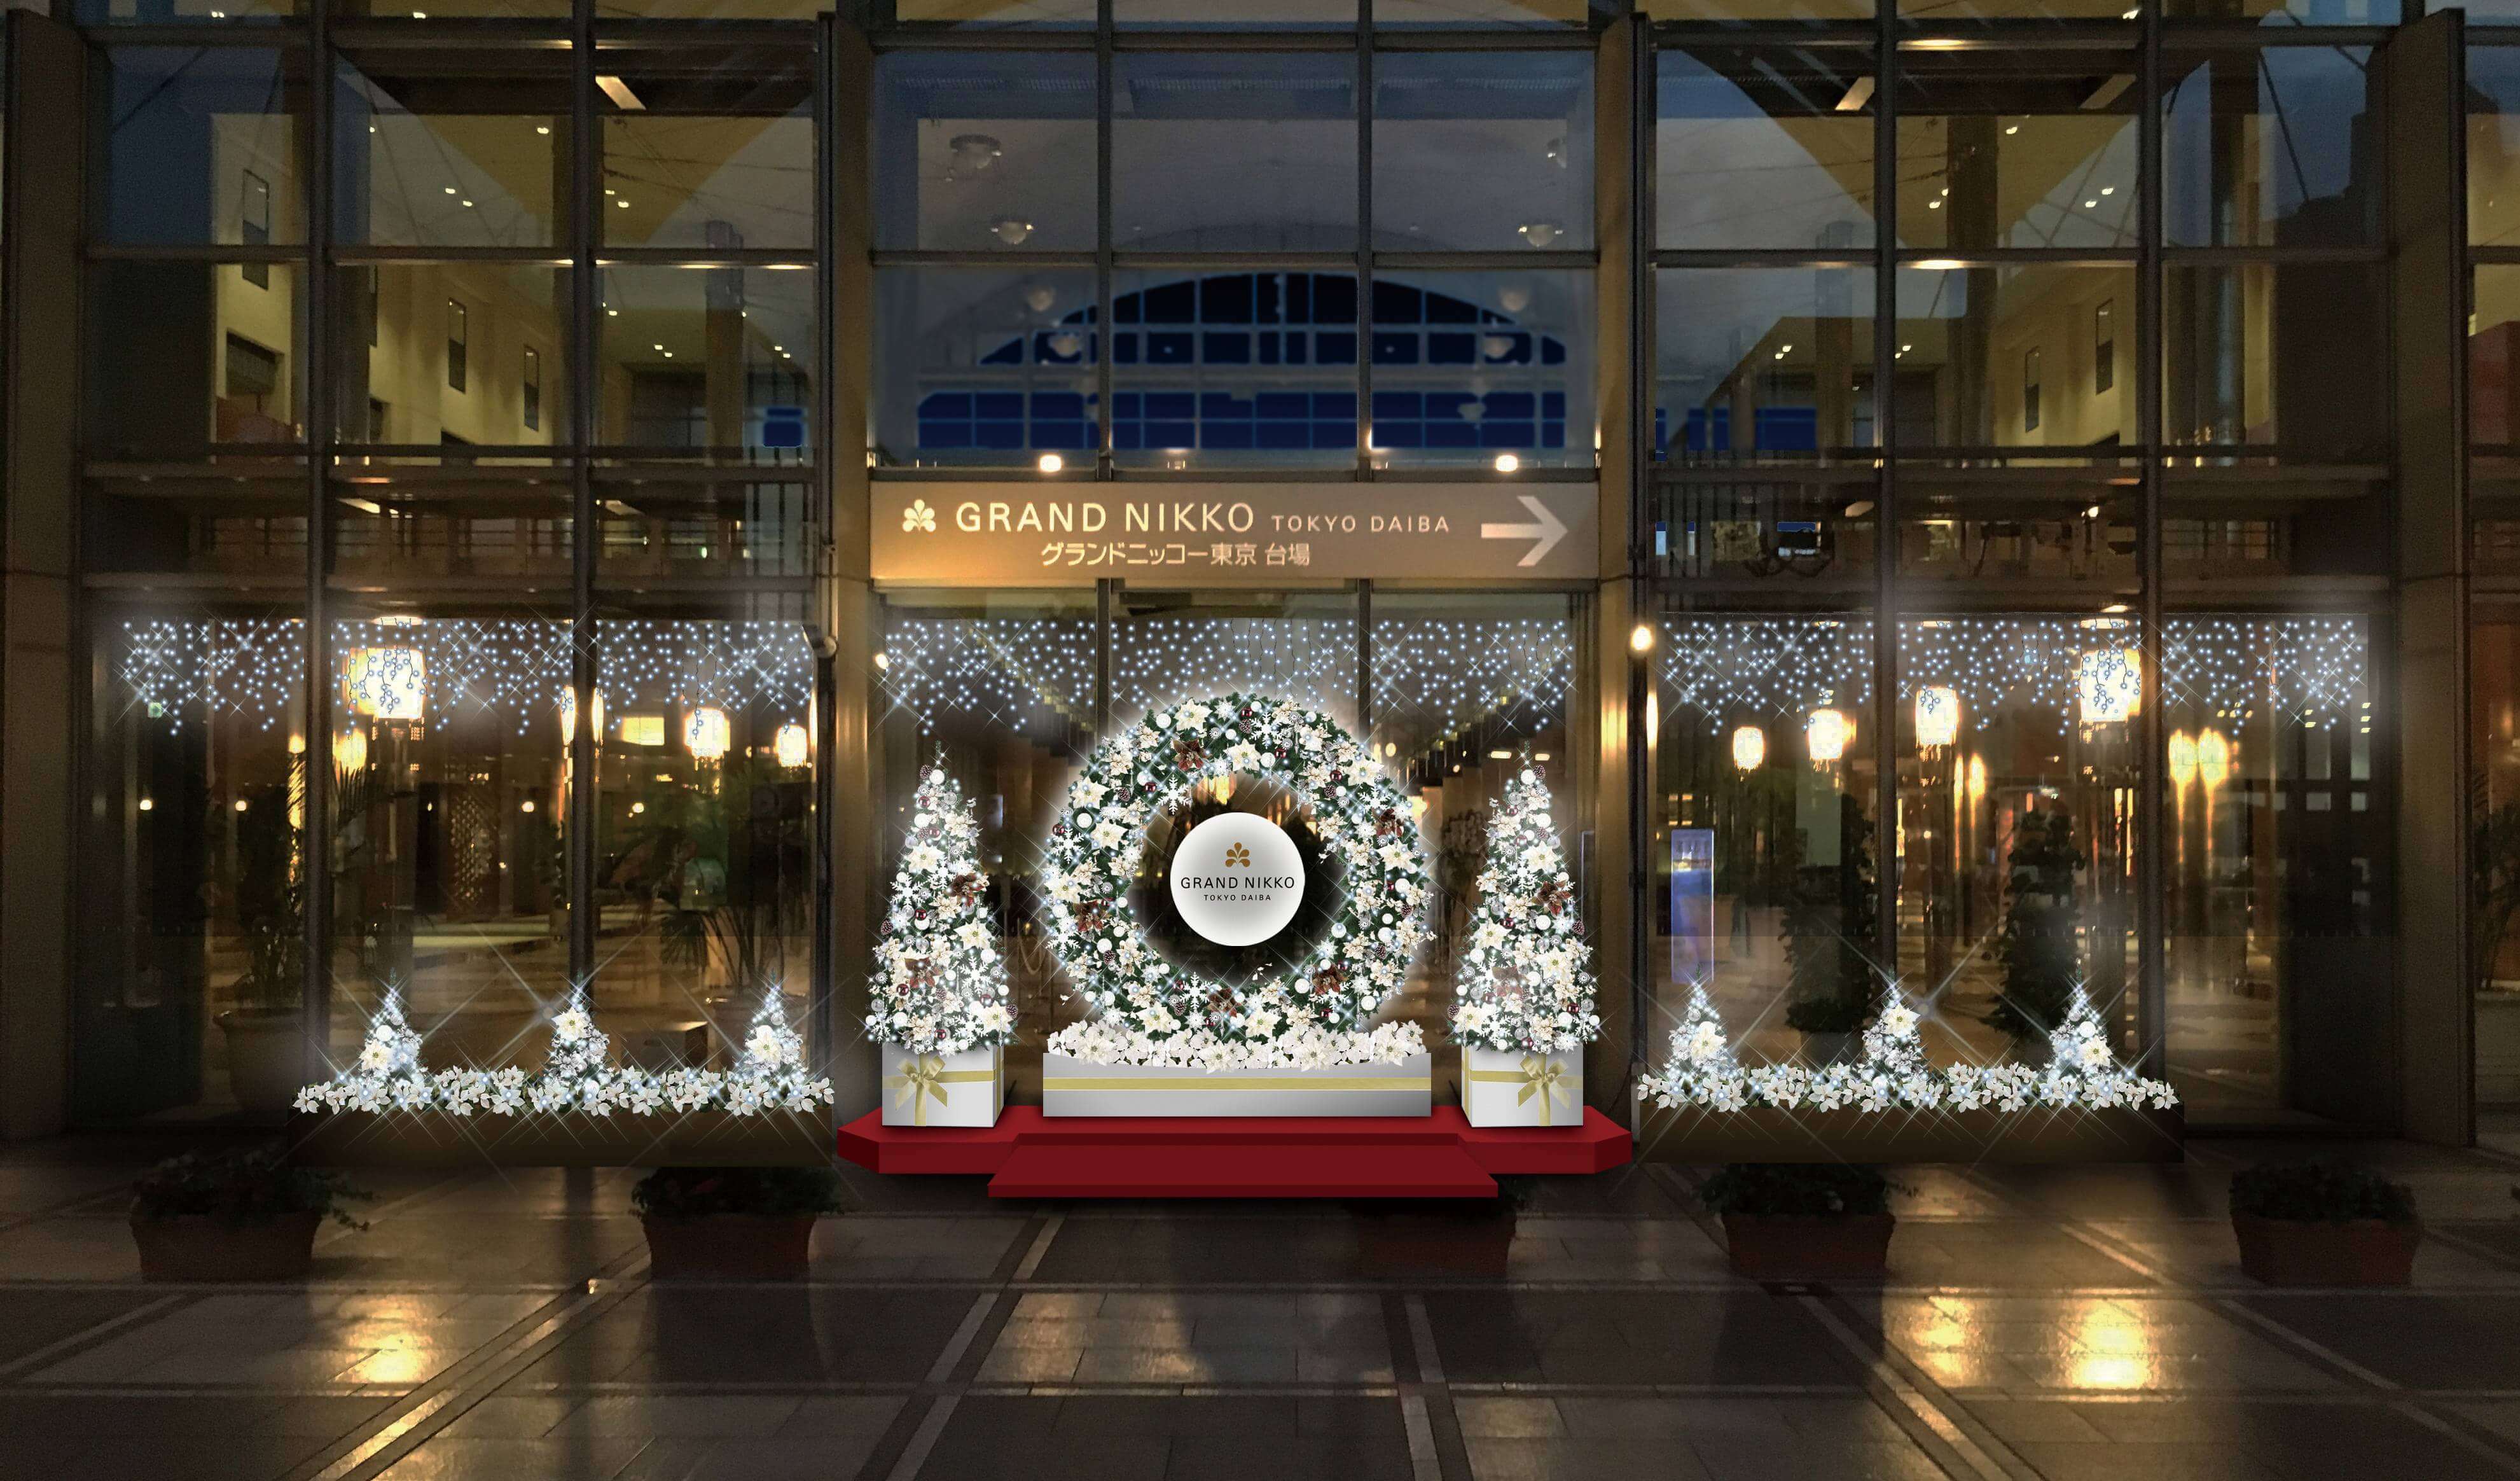 イルミネーションアイランドお台場2018 Illumination Island Odaiba 燈飾 グランドニッコー東京 台場